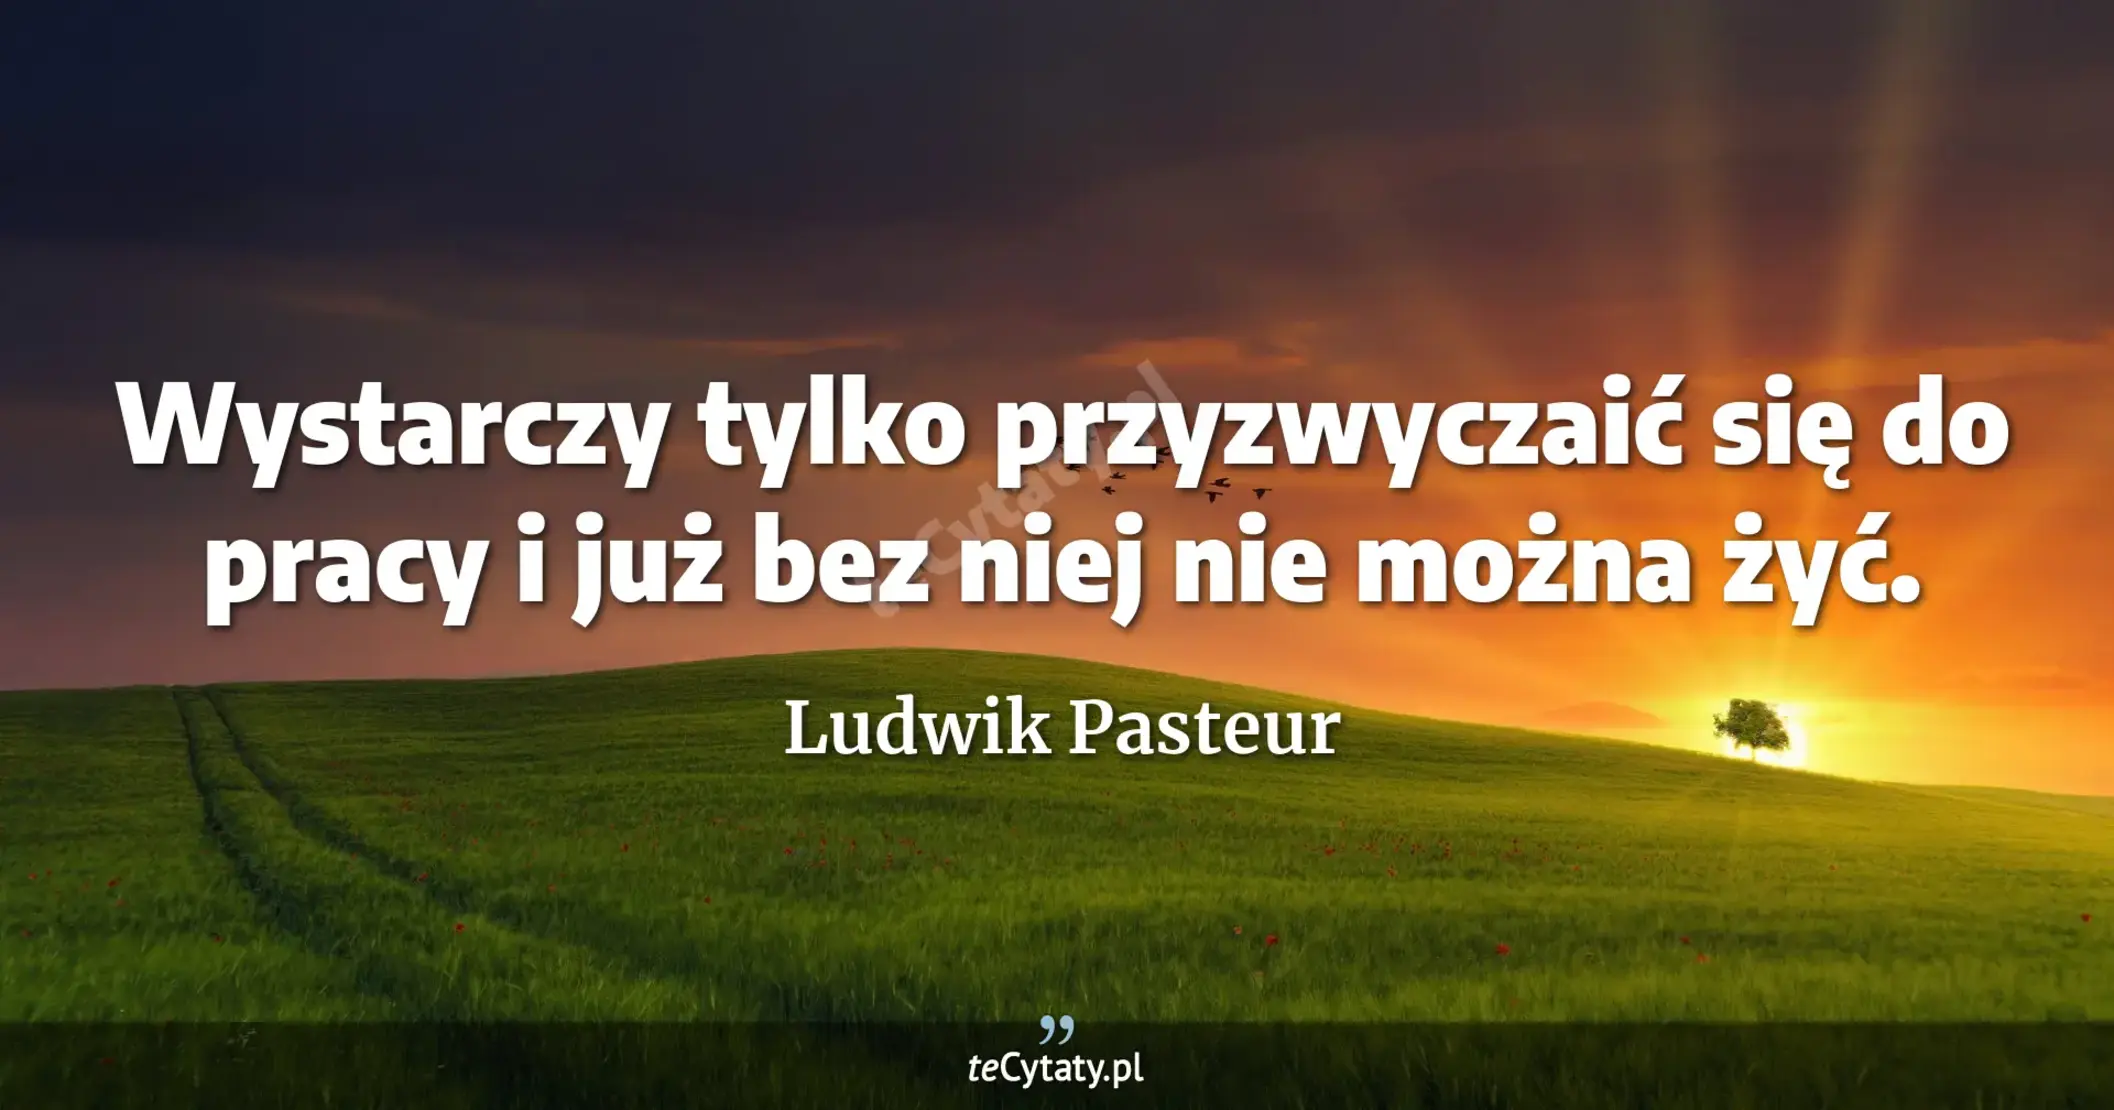 Wystarczy tylko przyzwyczaić się do pracy i już bez niej nie można żyć. - Ludwik Pasteur